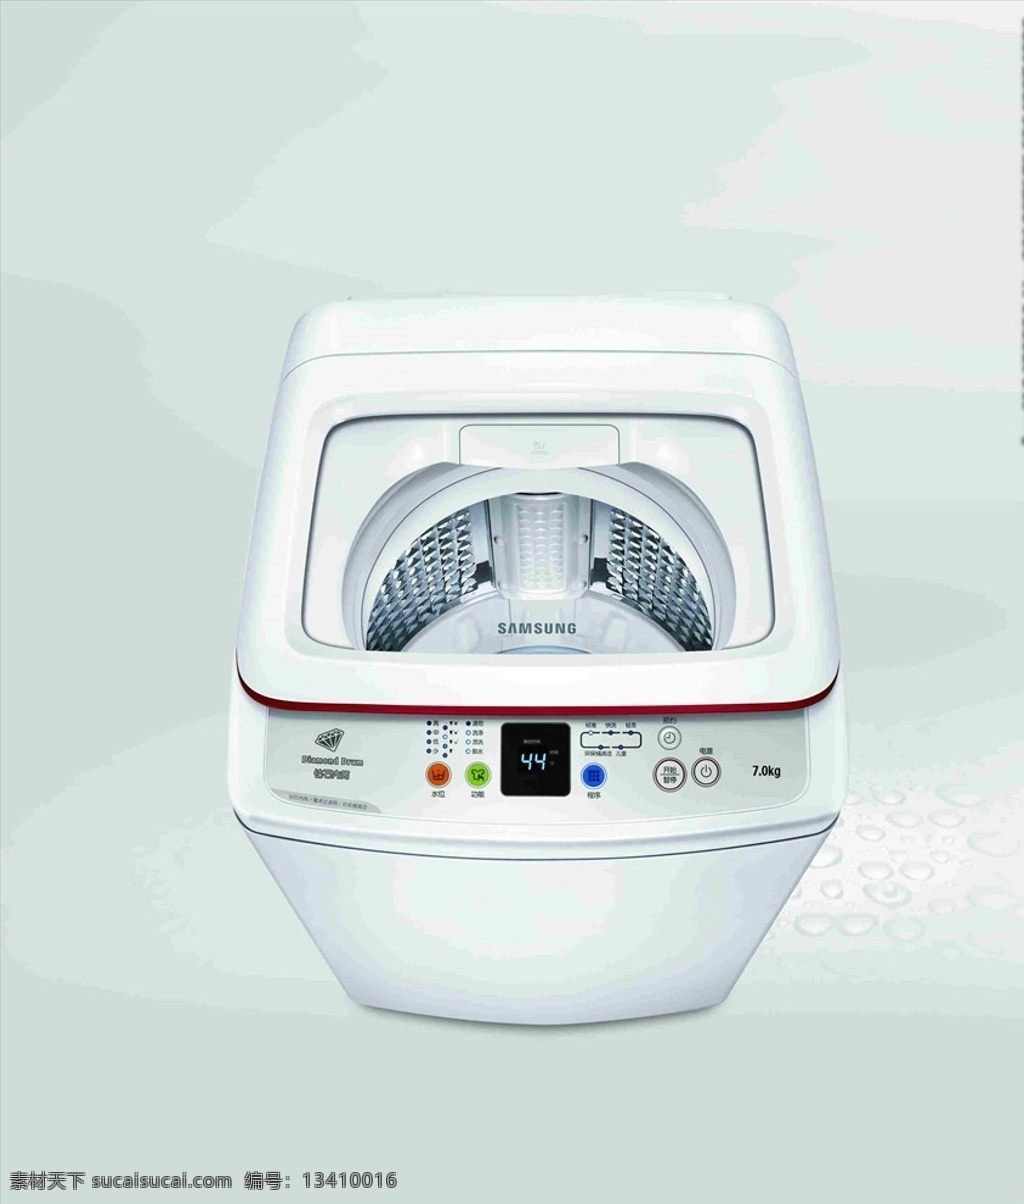 三星洗衣机 高科技 洗衣 机 三星 科技 节能 黑科技 家电 家居 家用电器 洗衣机 空白模板 psd素材 招贴设计